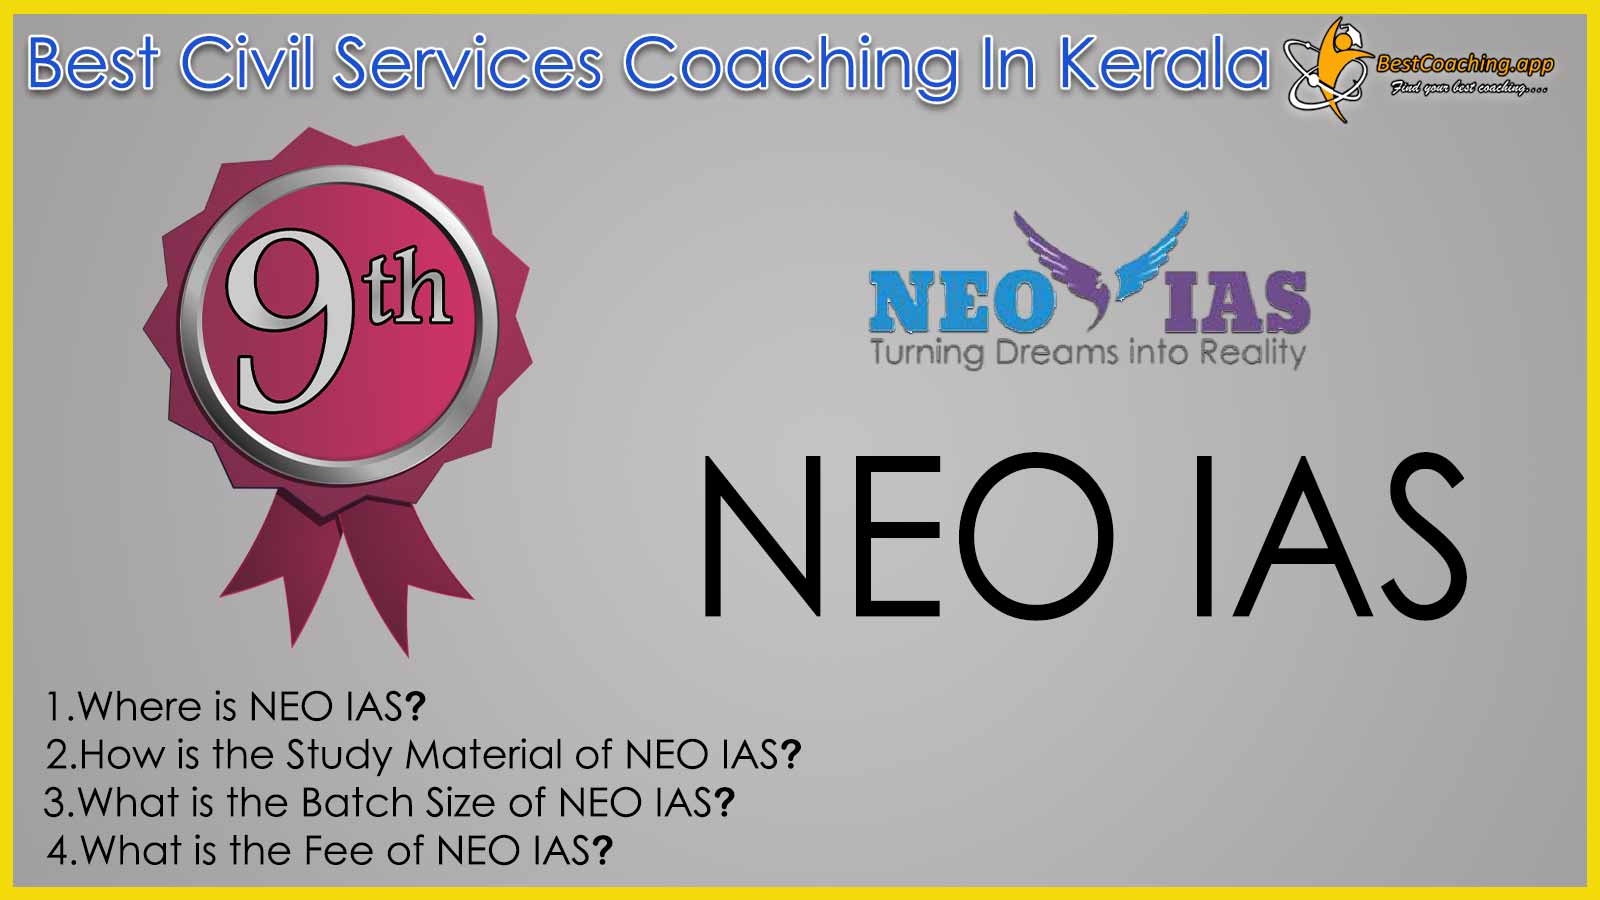 Neo IAS Coaching